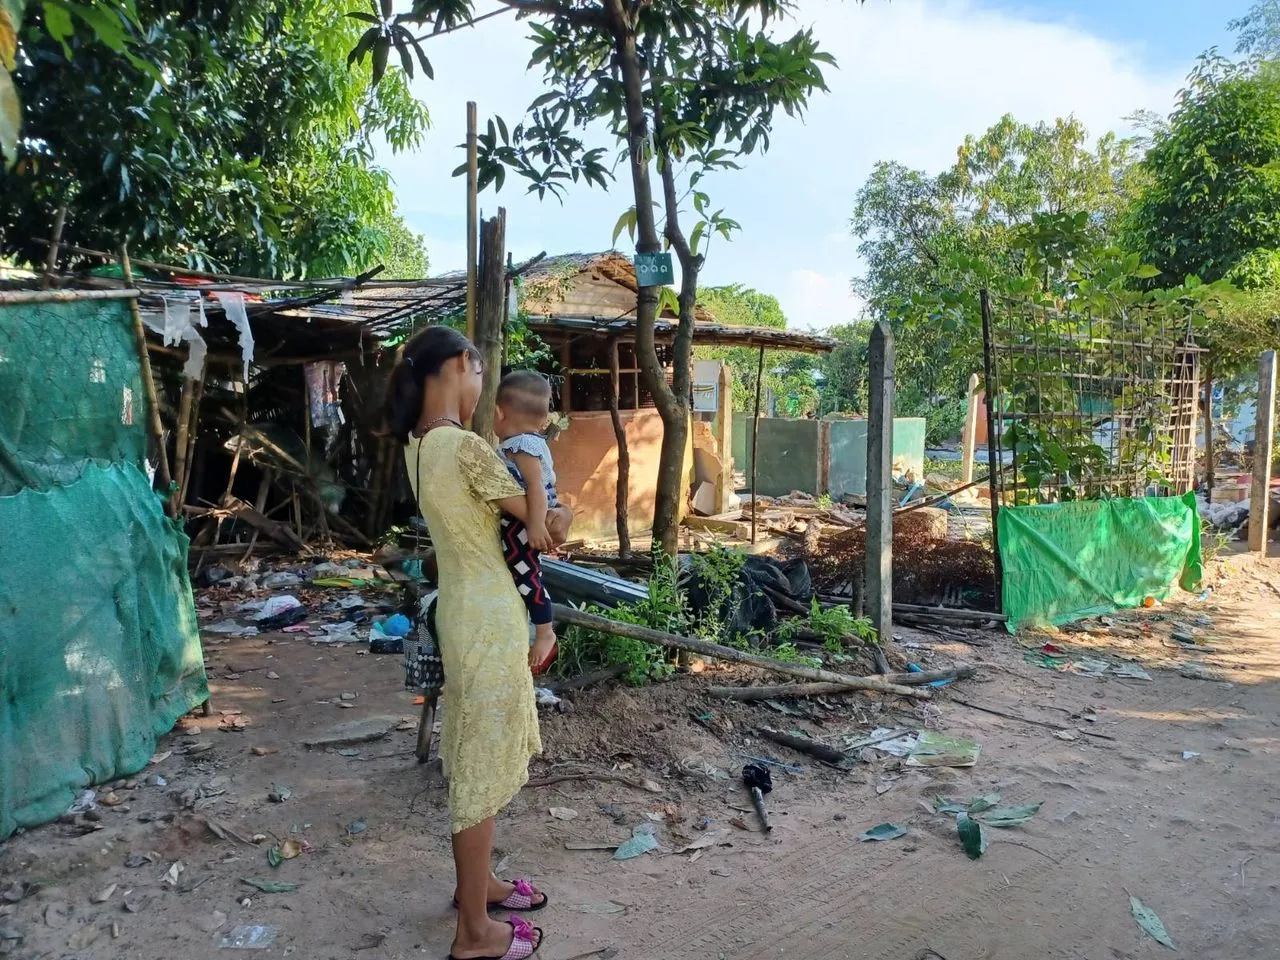 မင်္ဂလာဒုံတွင် တပ်ပိုင်မြေဟုဆိုကာဖယ်ရှားခိုင်းသည့်ရပ်ကွက်ငါးခုမှ အဆုံးစီရင်သူ သုံးဦးအထိရှိလာ